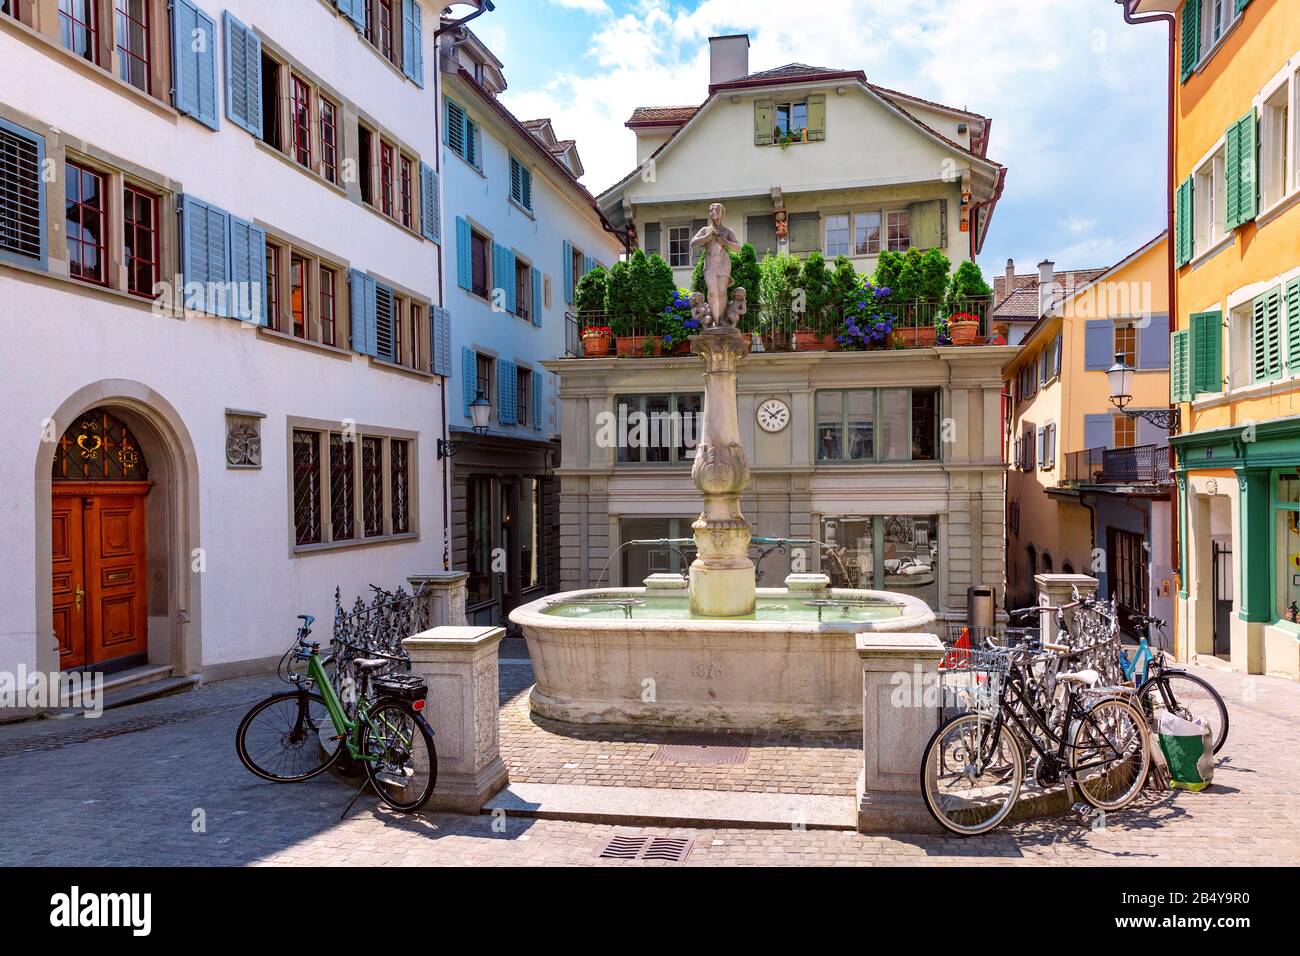 Schöner kleiner Platz mit Schüssel fontaine Napfbrunnen in der Altstadt von  Zürich am sonnigen Tag, Schweiz Stockfotografie - Alamy